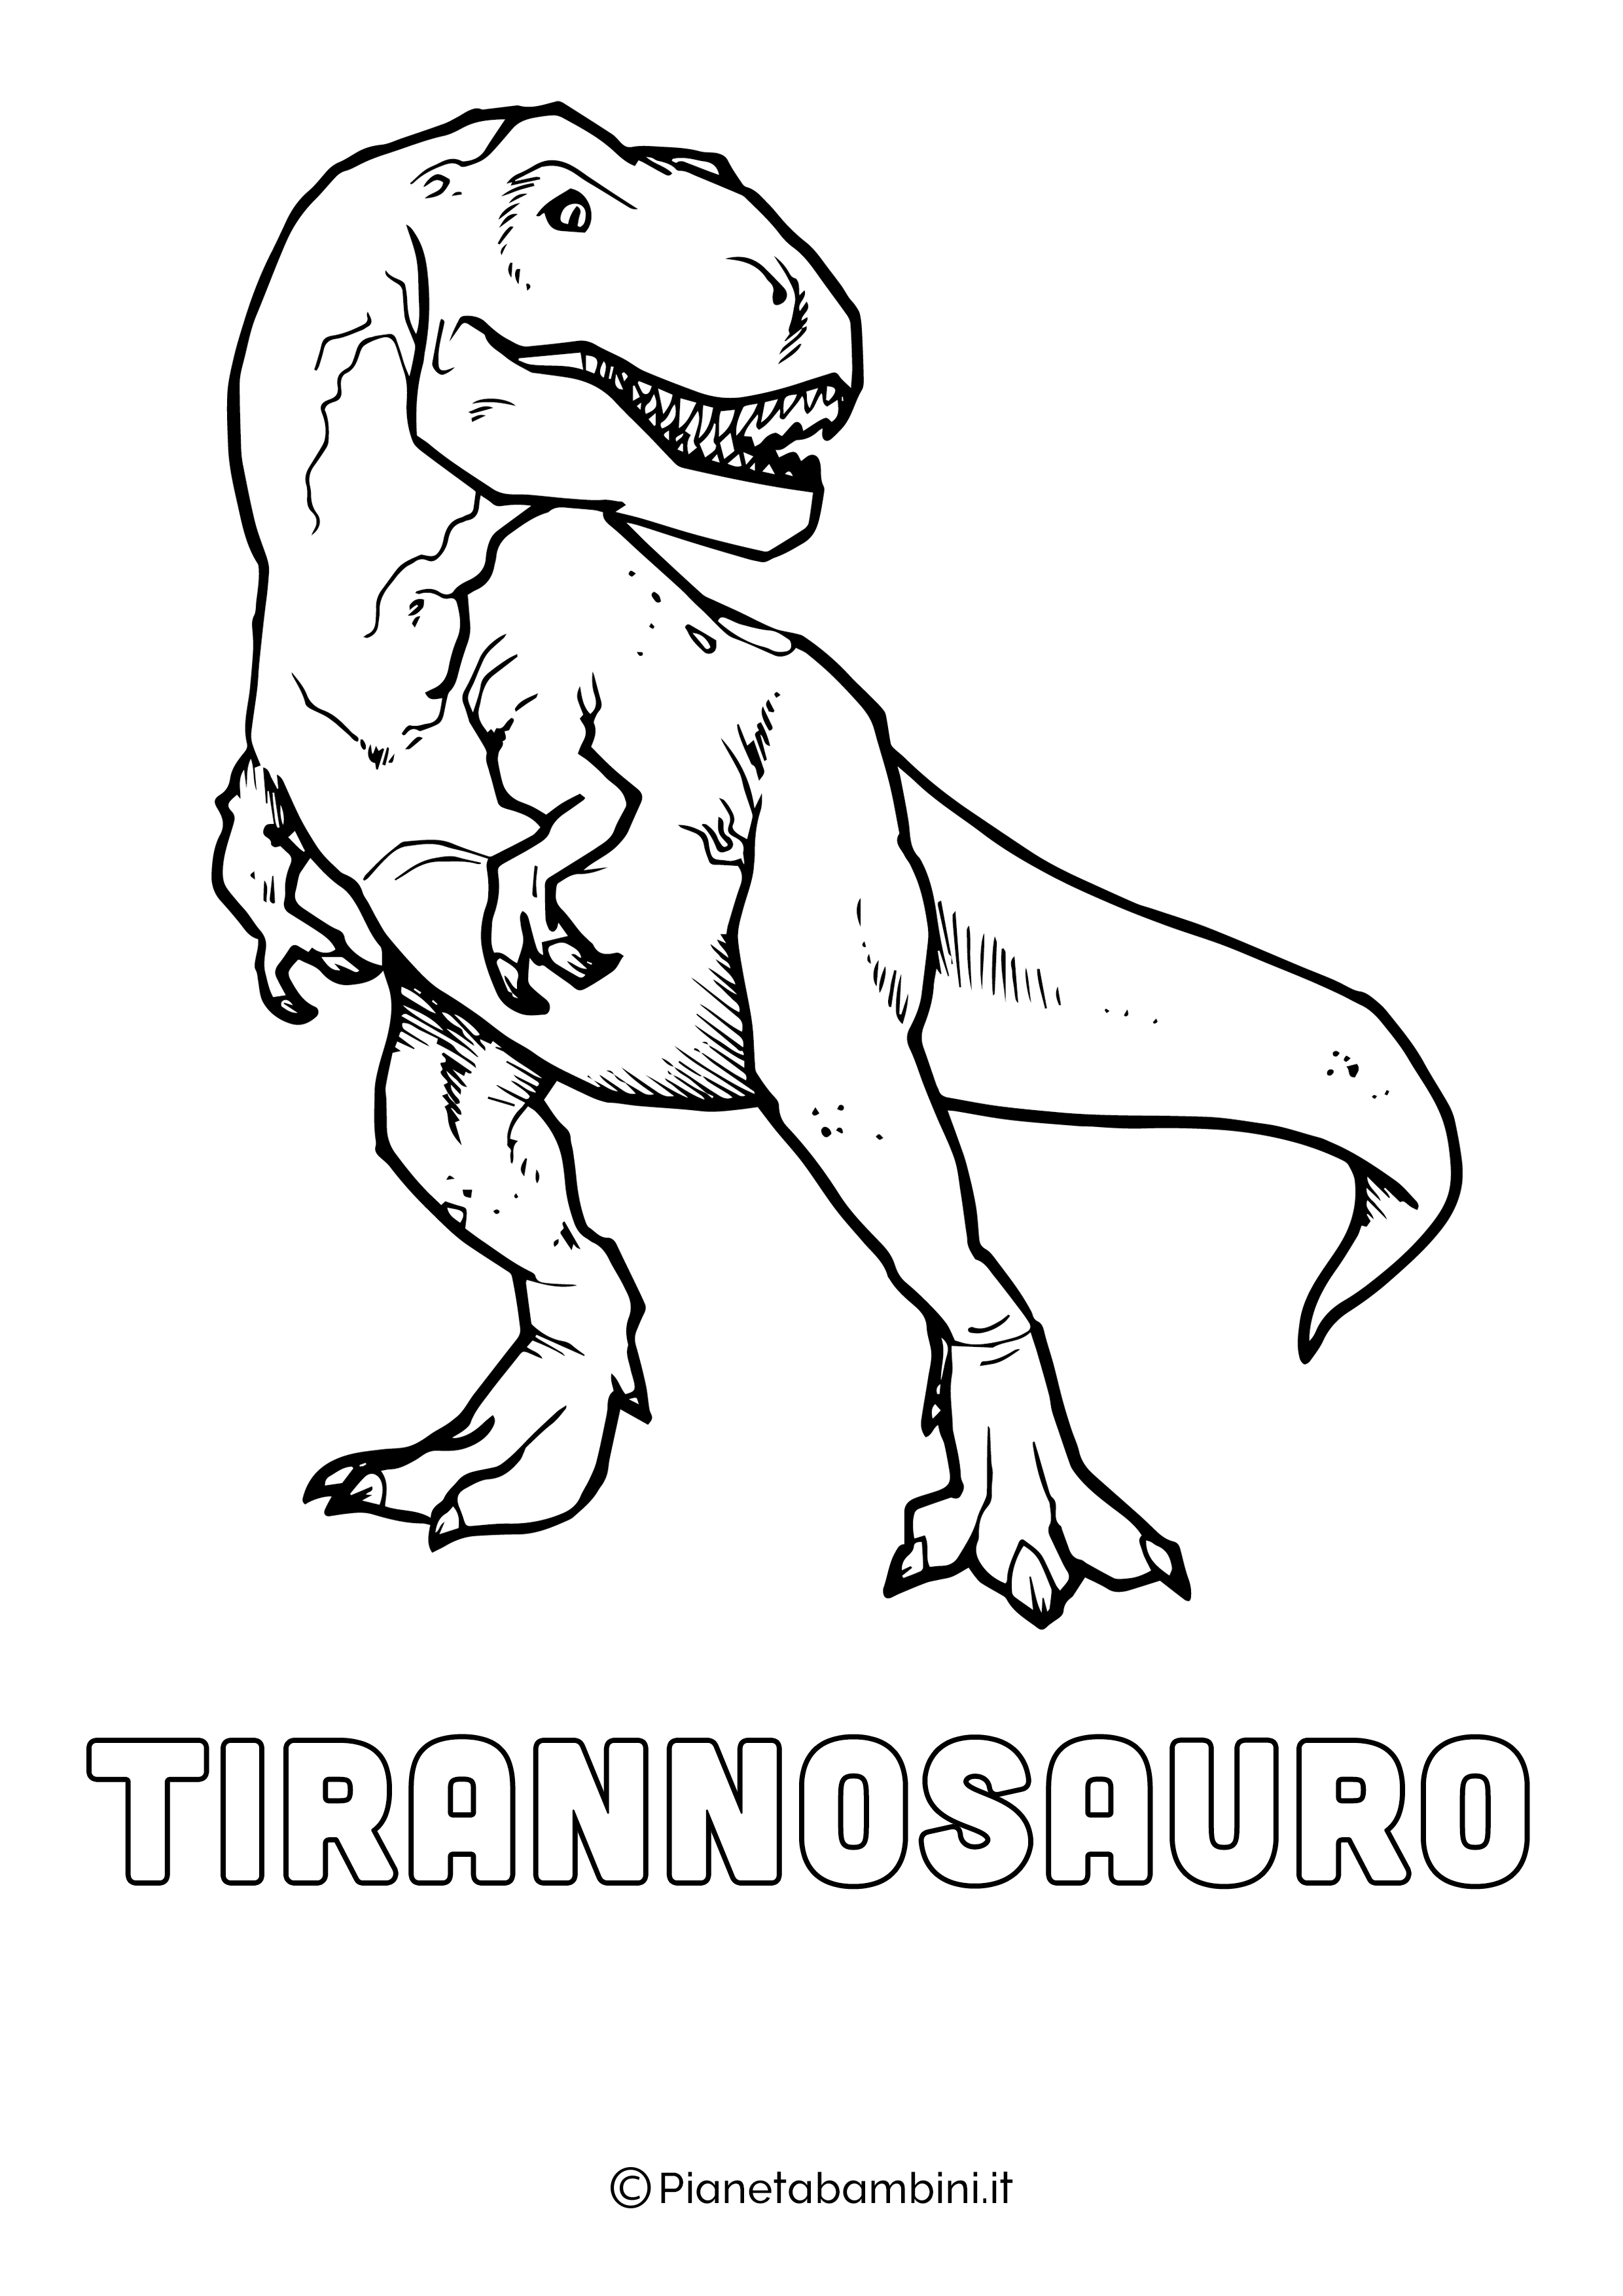 Dinosauro Tirannosauro da colorare